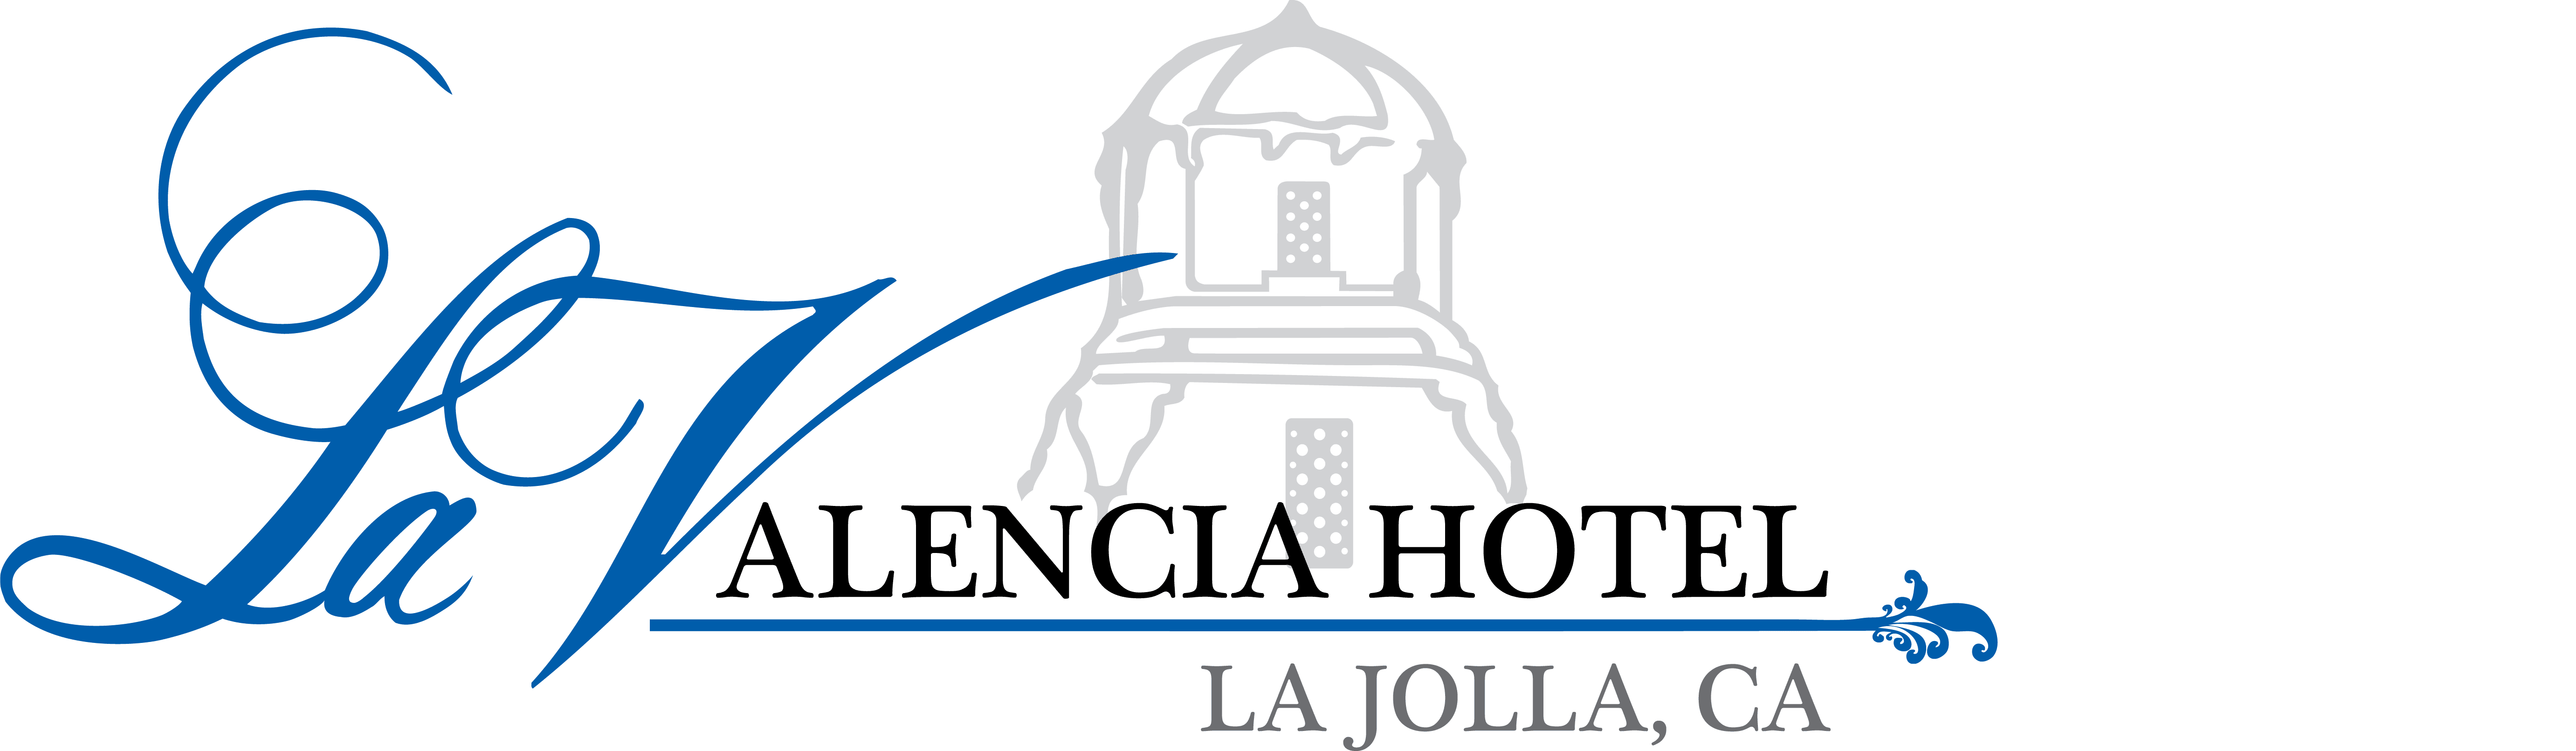 La Valencia Hotel